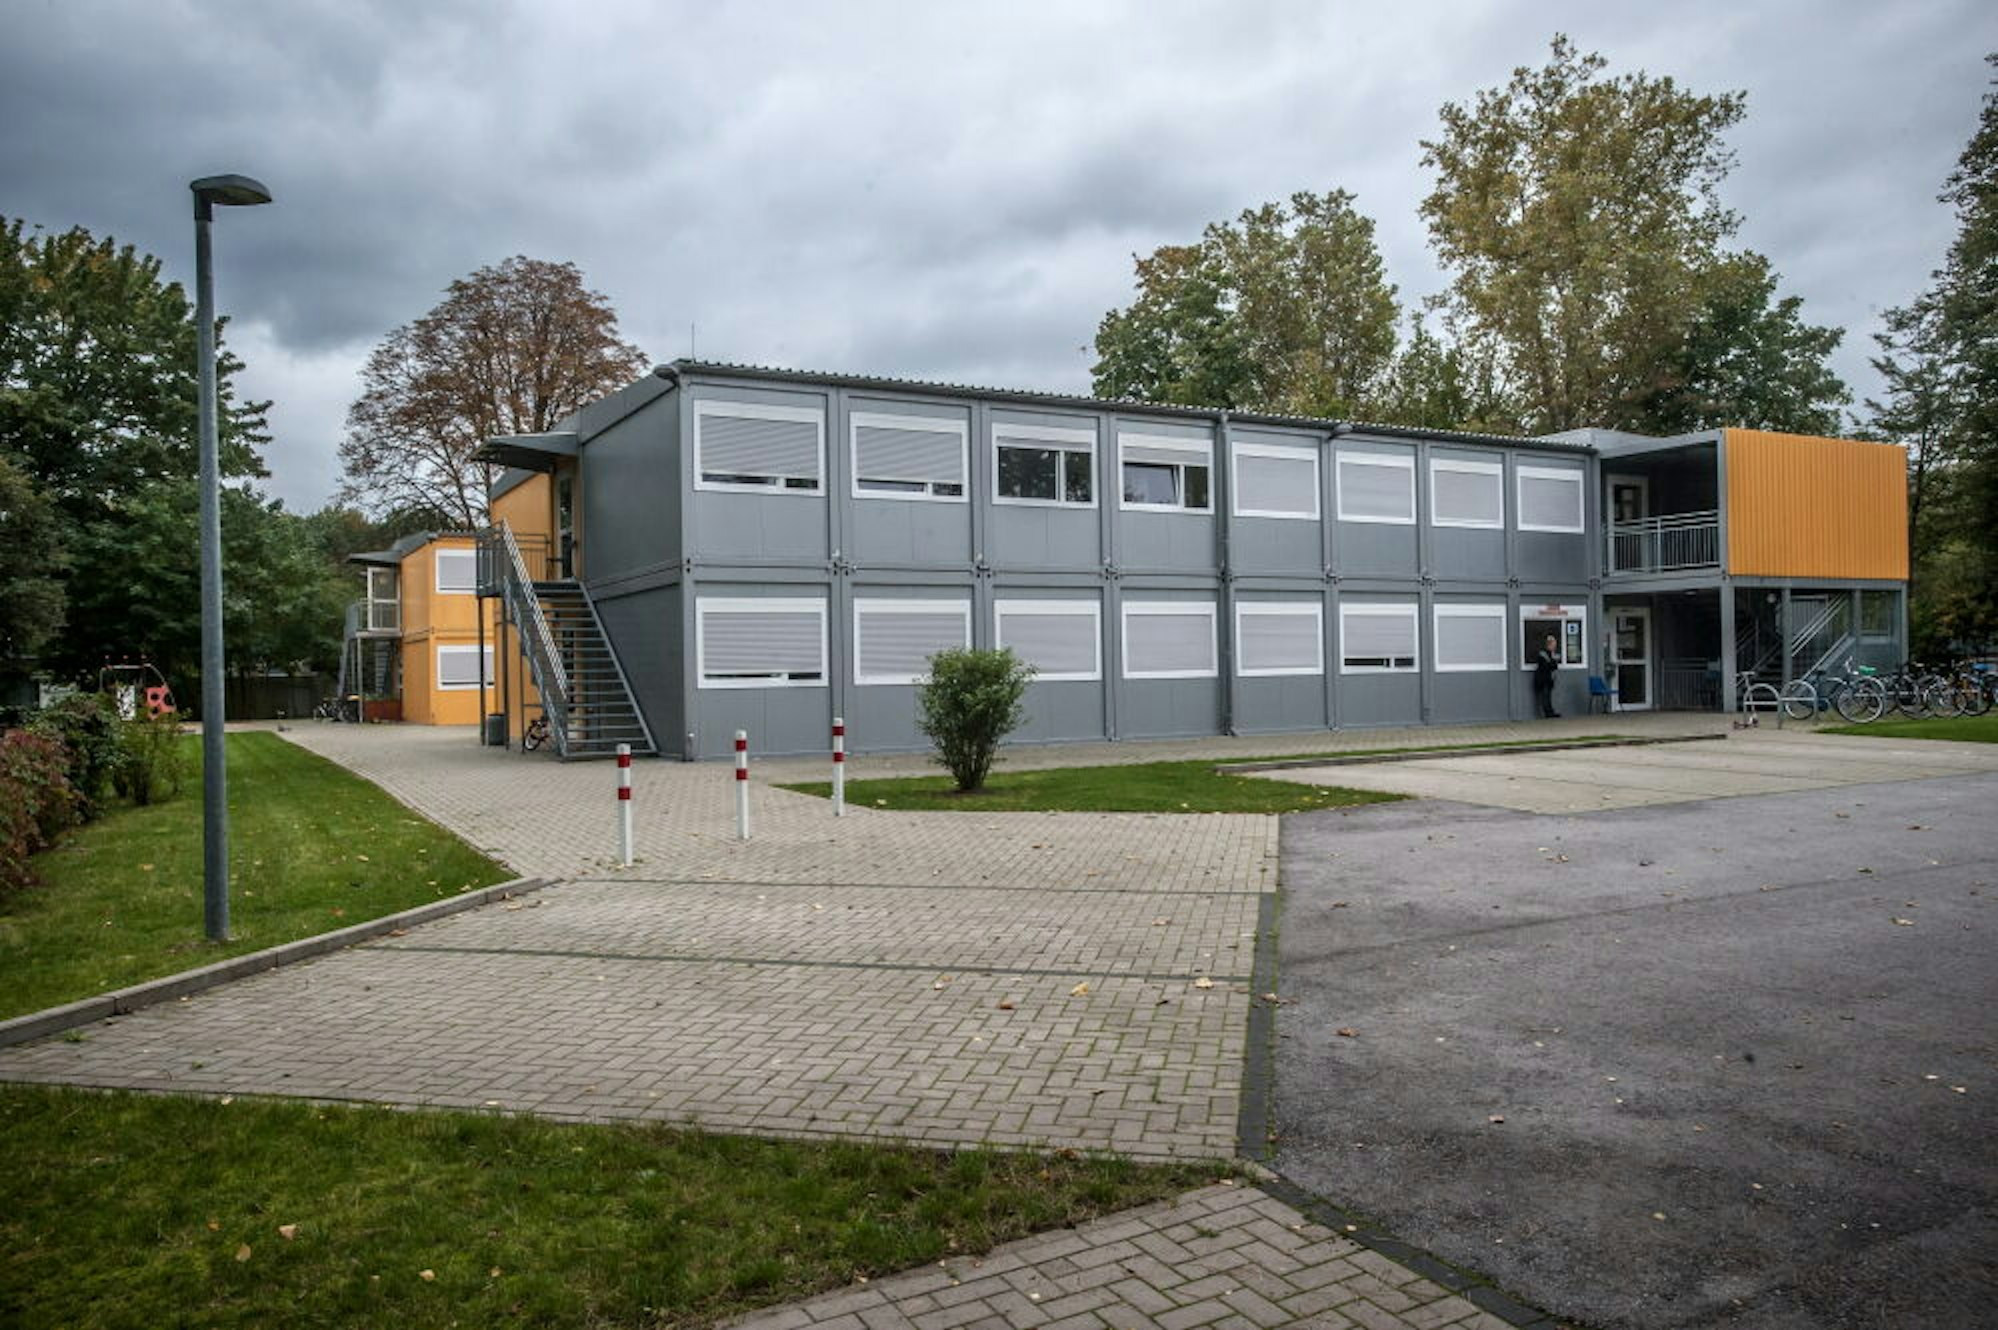 Die Wohncontainer an der Merziger Straße, als Flüchtlingsunterkunft gebaut und genutzt, könnten in den nächsten Jahren Schulklassen aus dem Stadtteil beherbergen.